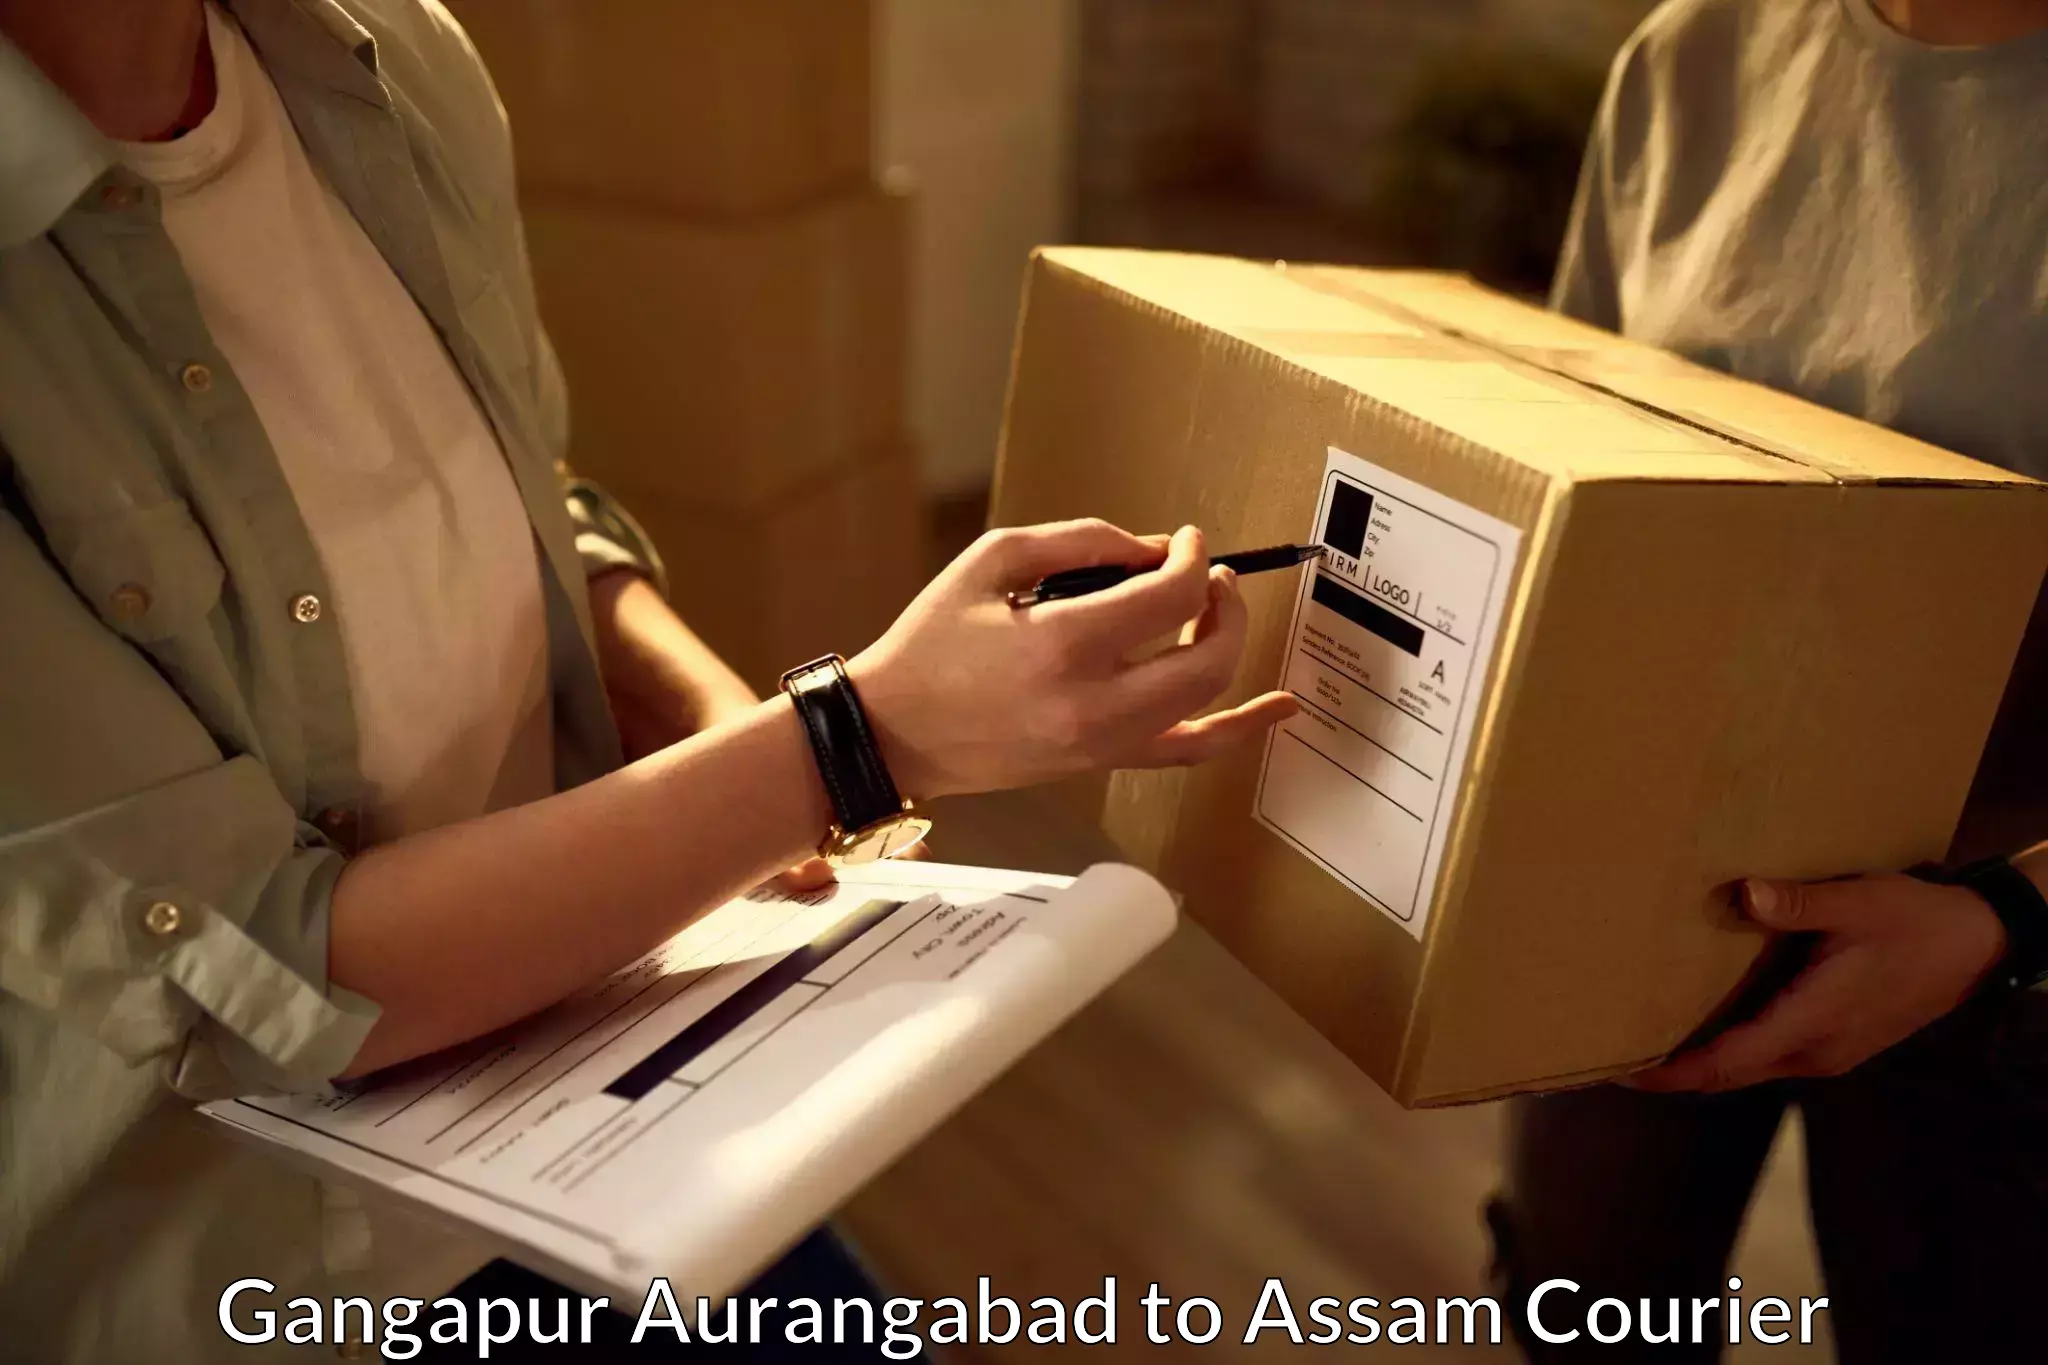 Reliable courier service Gangapur Aurangabad to Mangaldoi